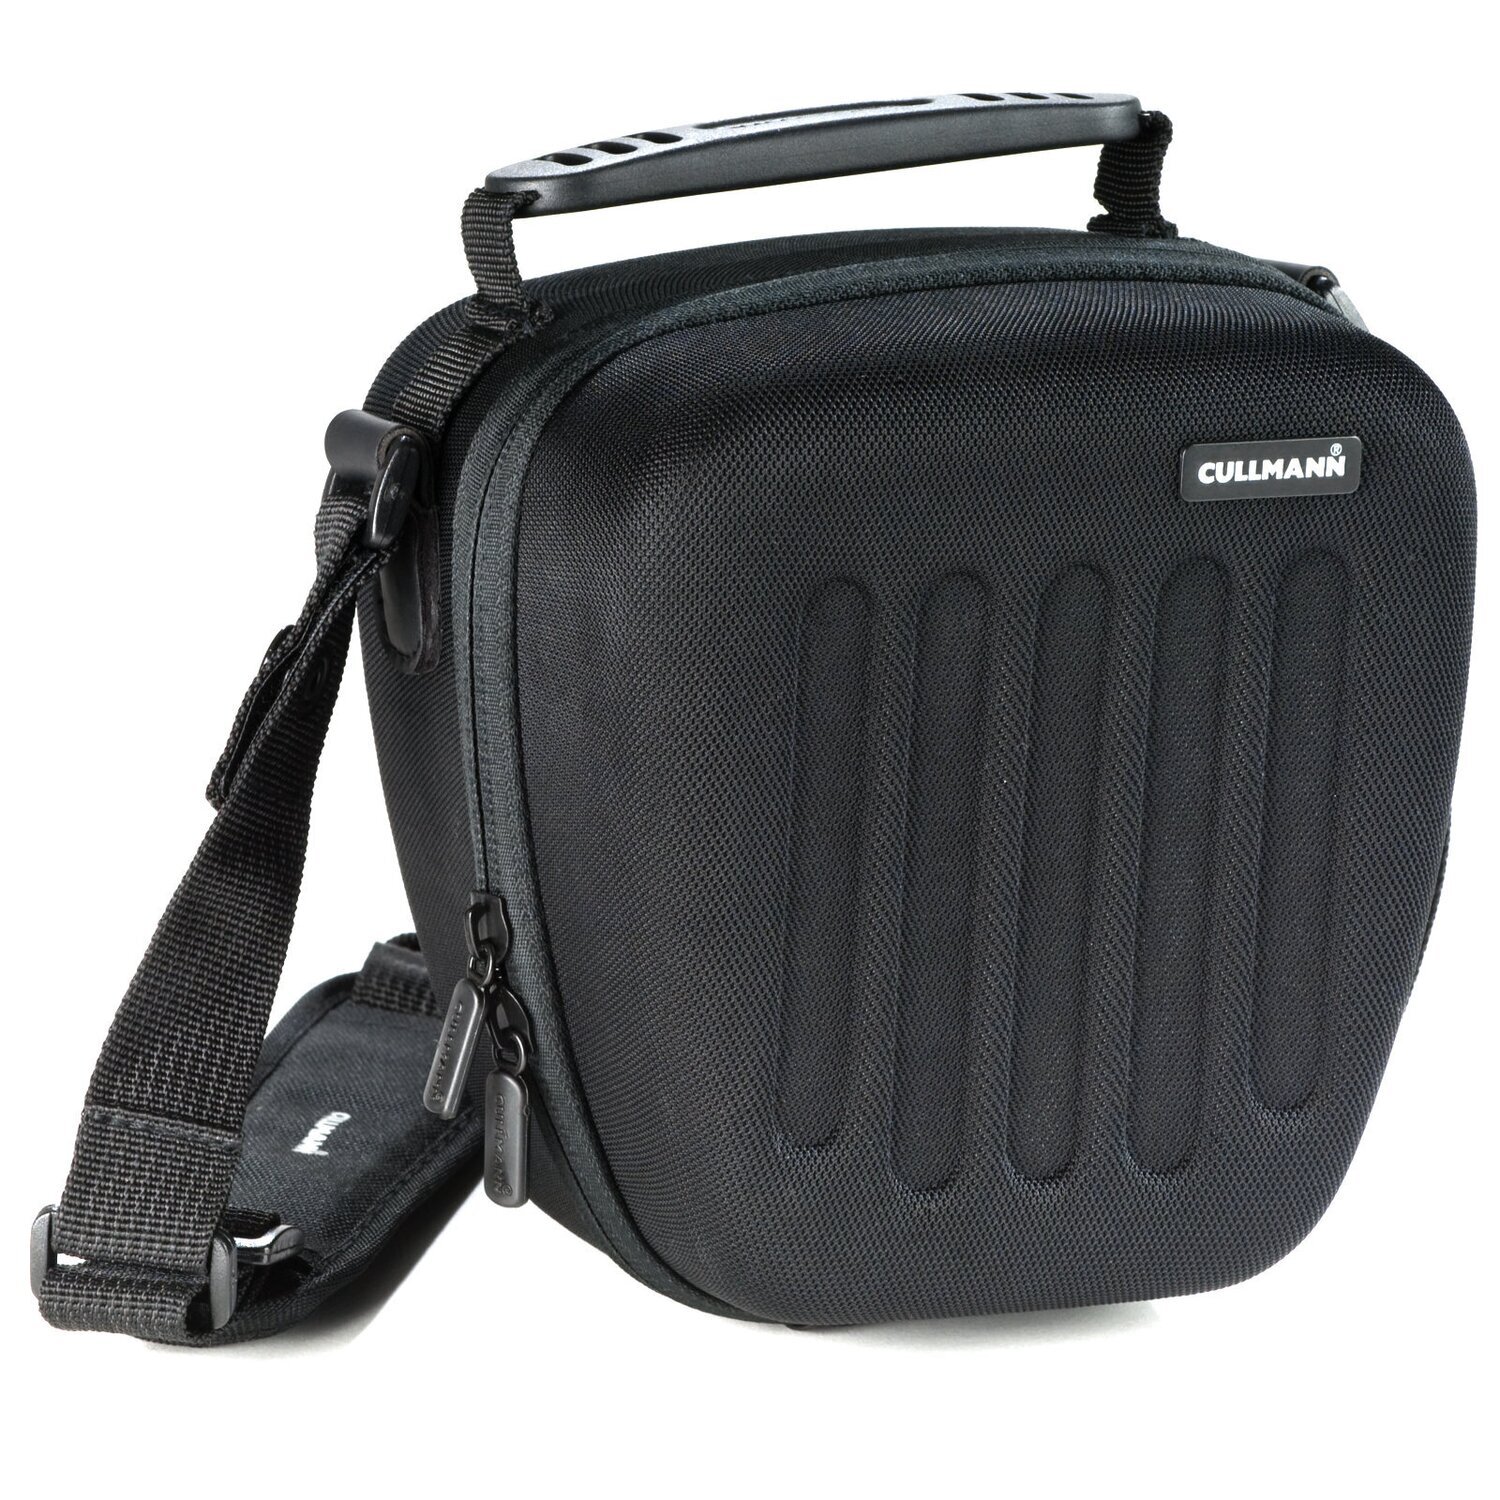 Hardcase Kameratasche passend für Nikon D3500 und 18-55mm Objektiv